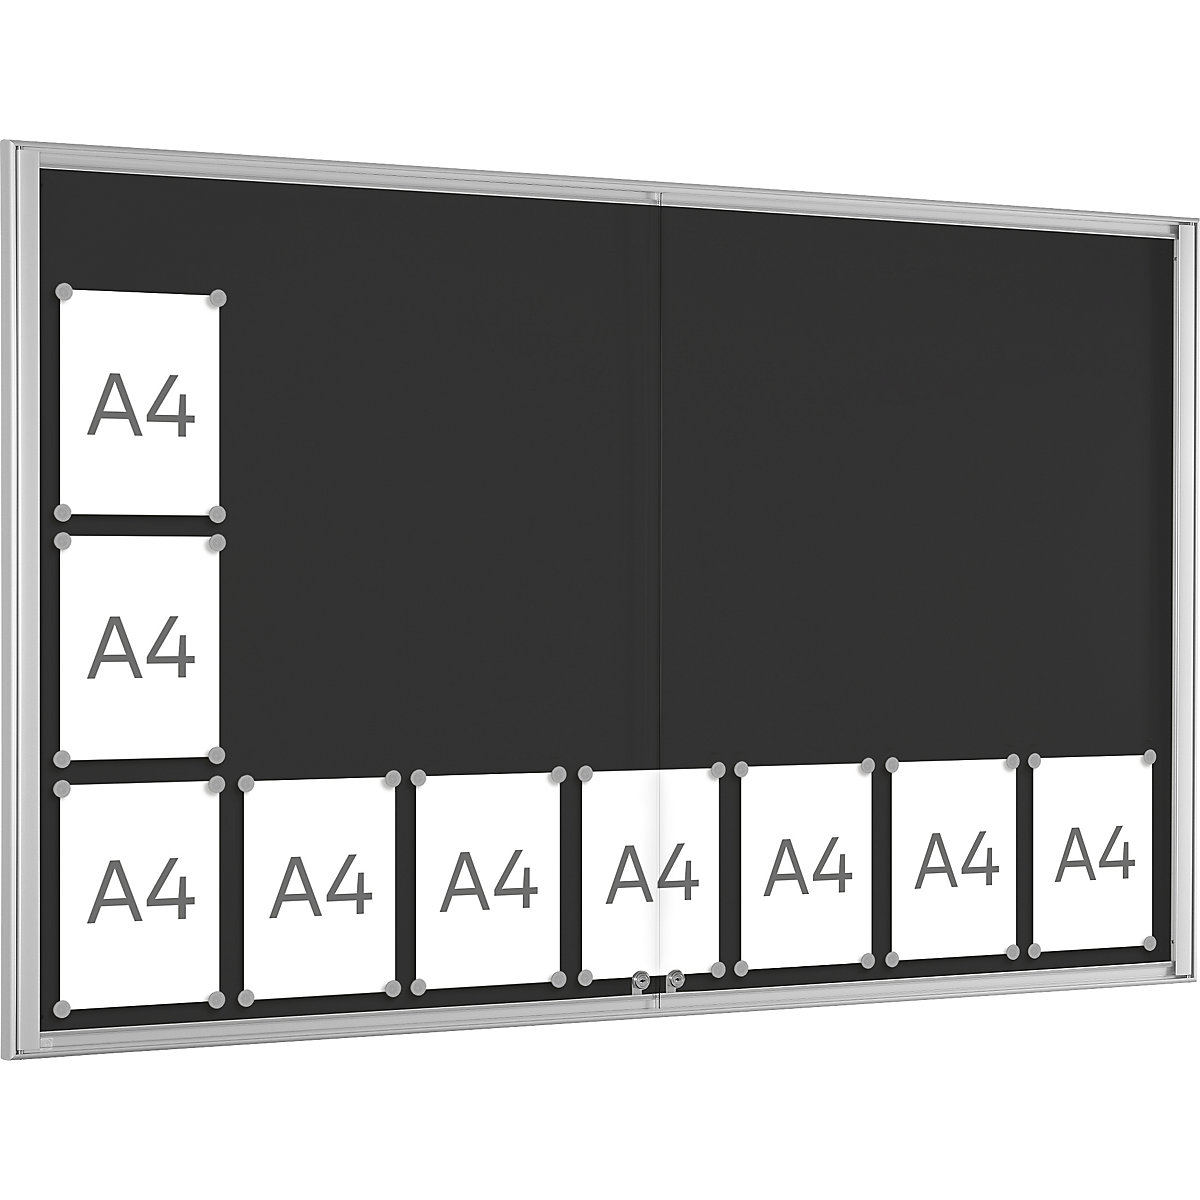 Informační skříňka BASIC (Obrázek výrobku 5)